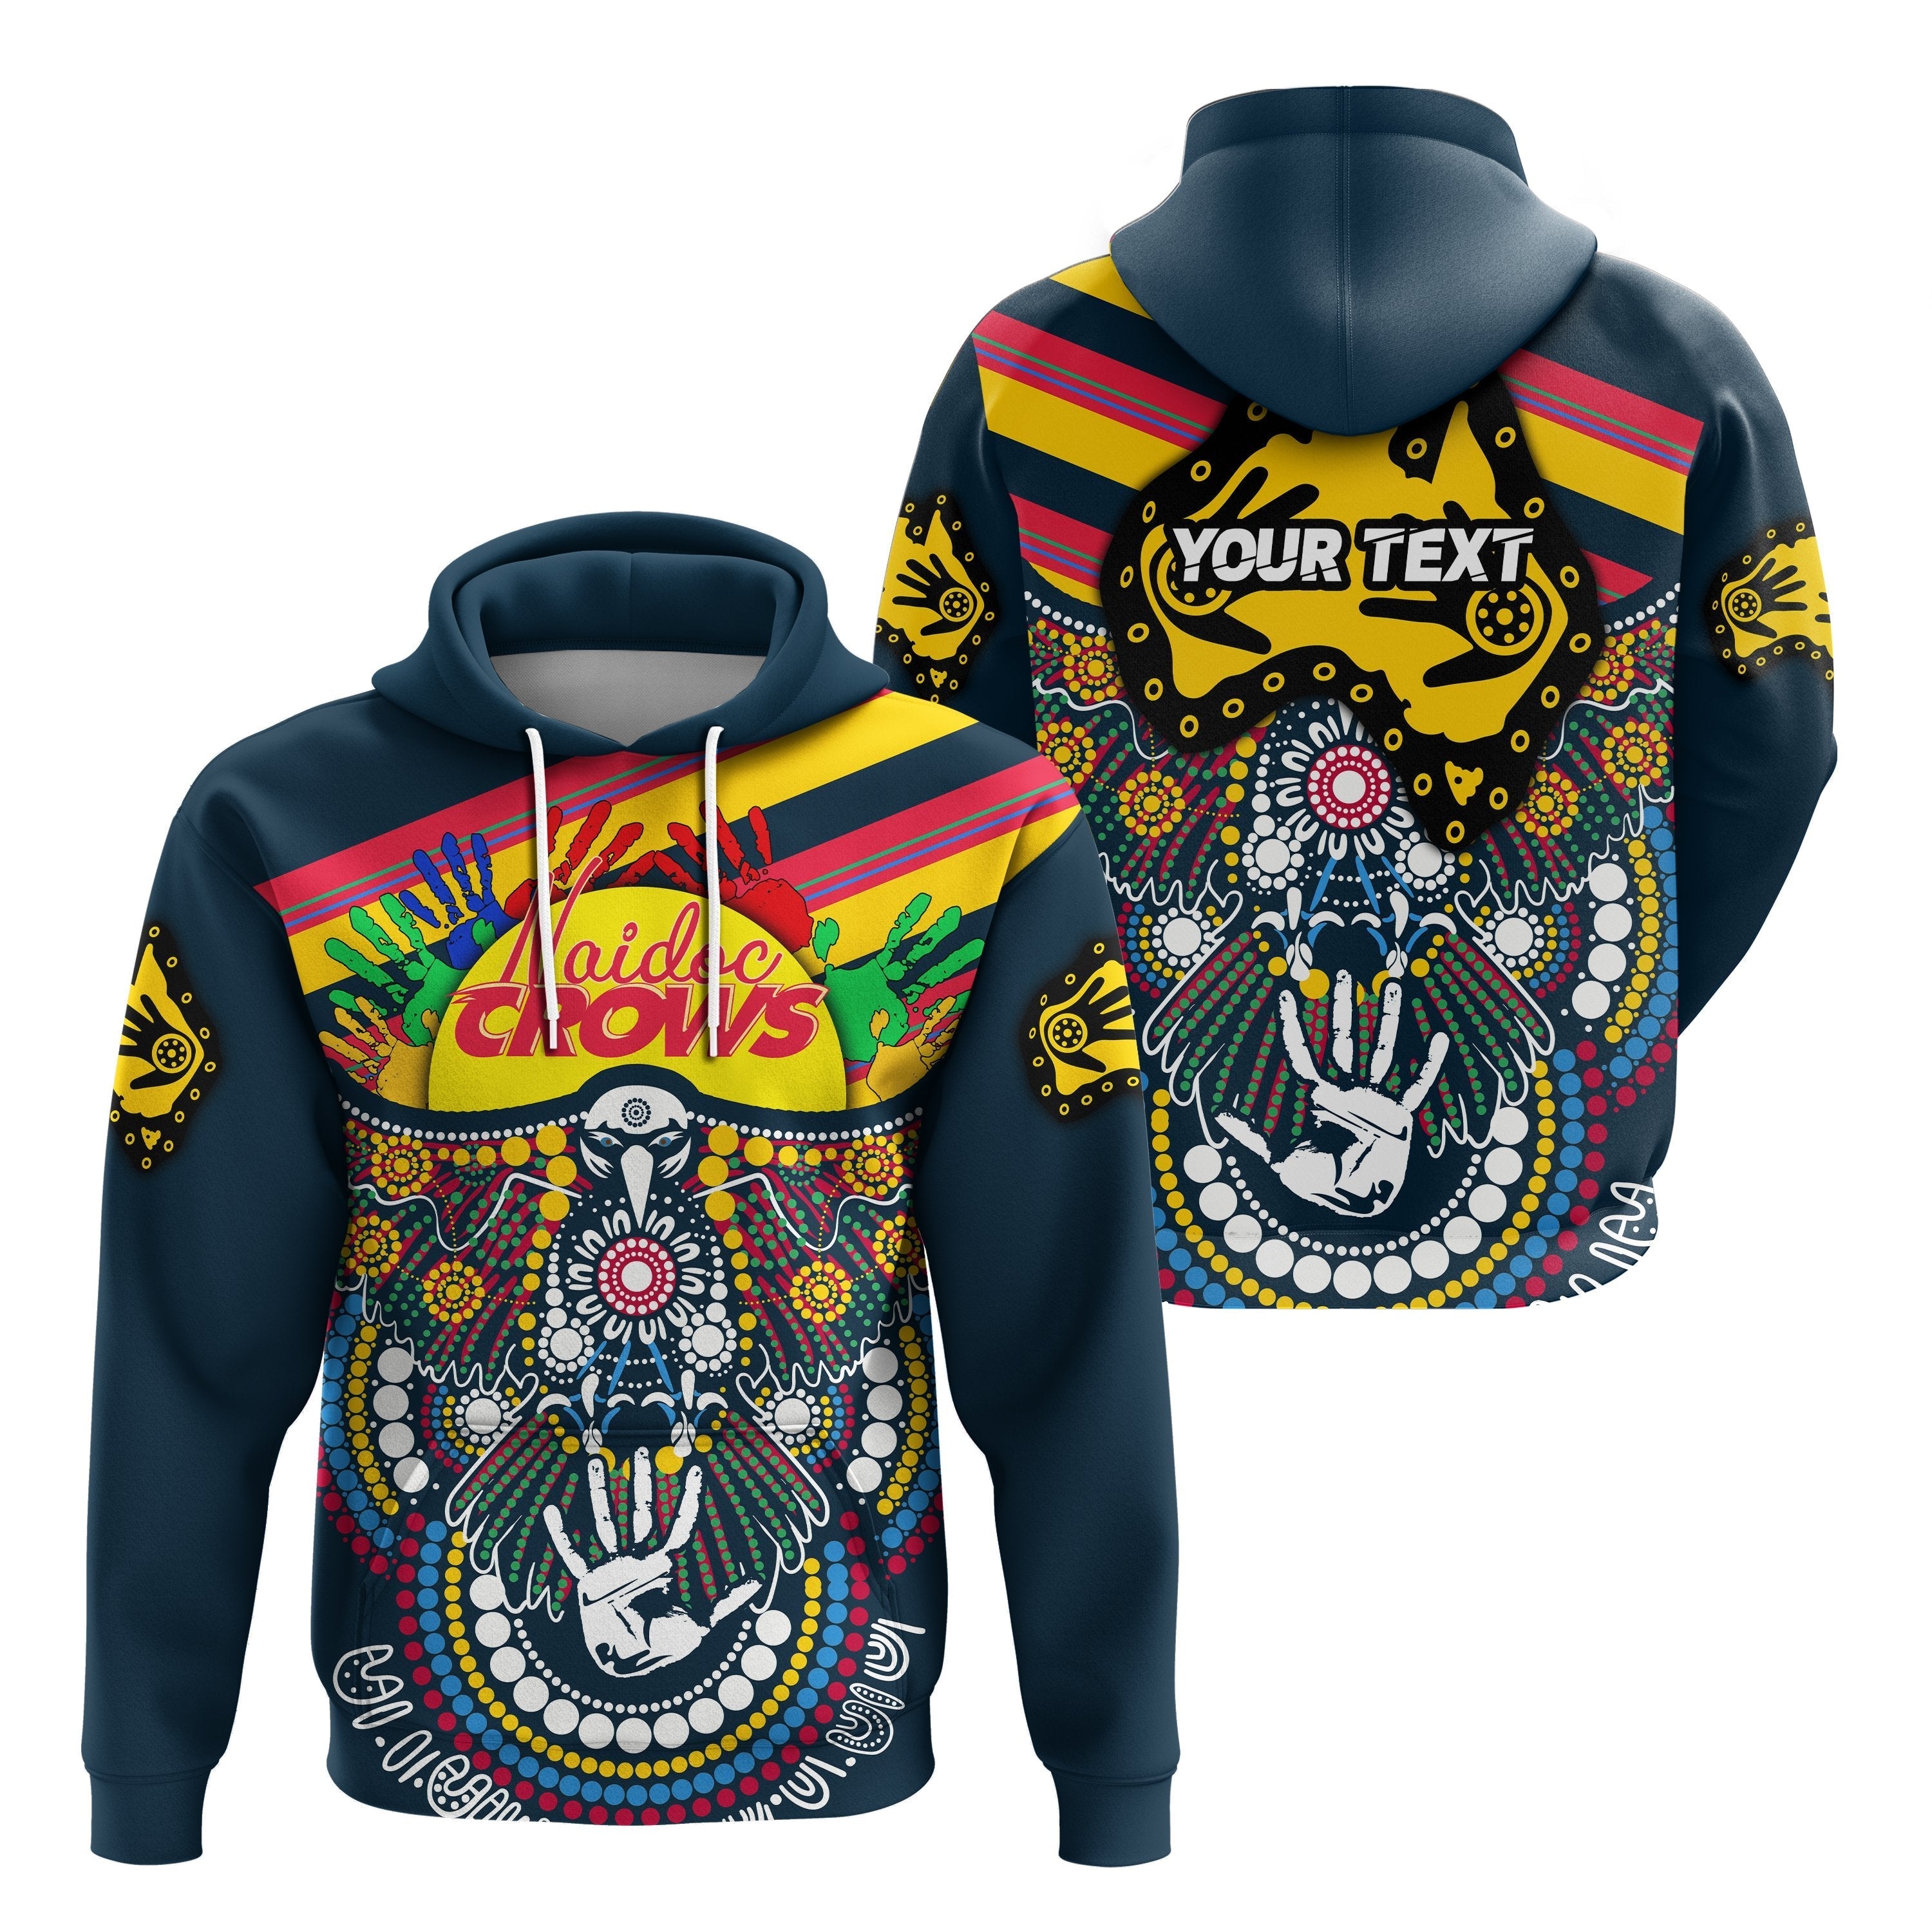 custom-personalised-adelaide-naidoc-week-hoodie-special-crows-aboriginal-sport-style